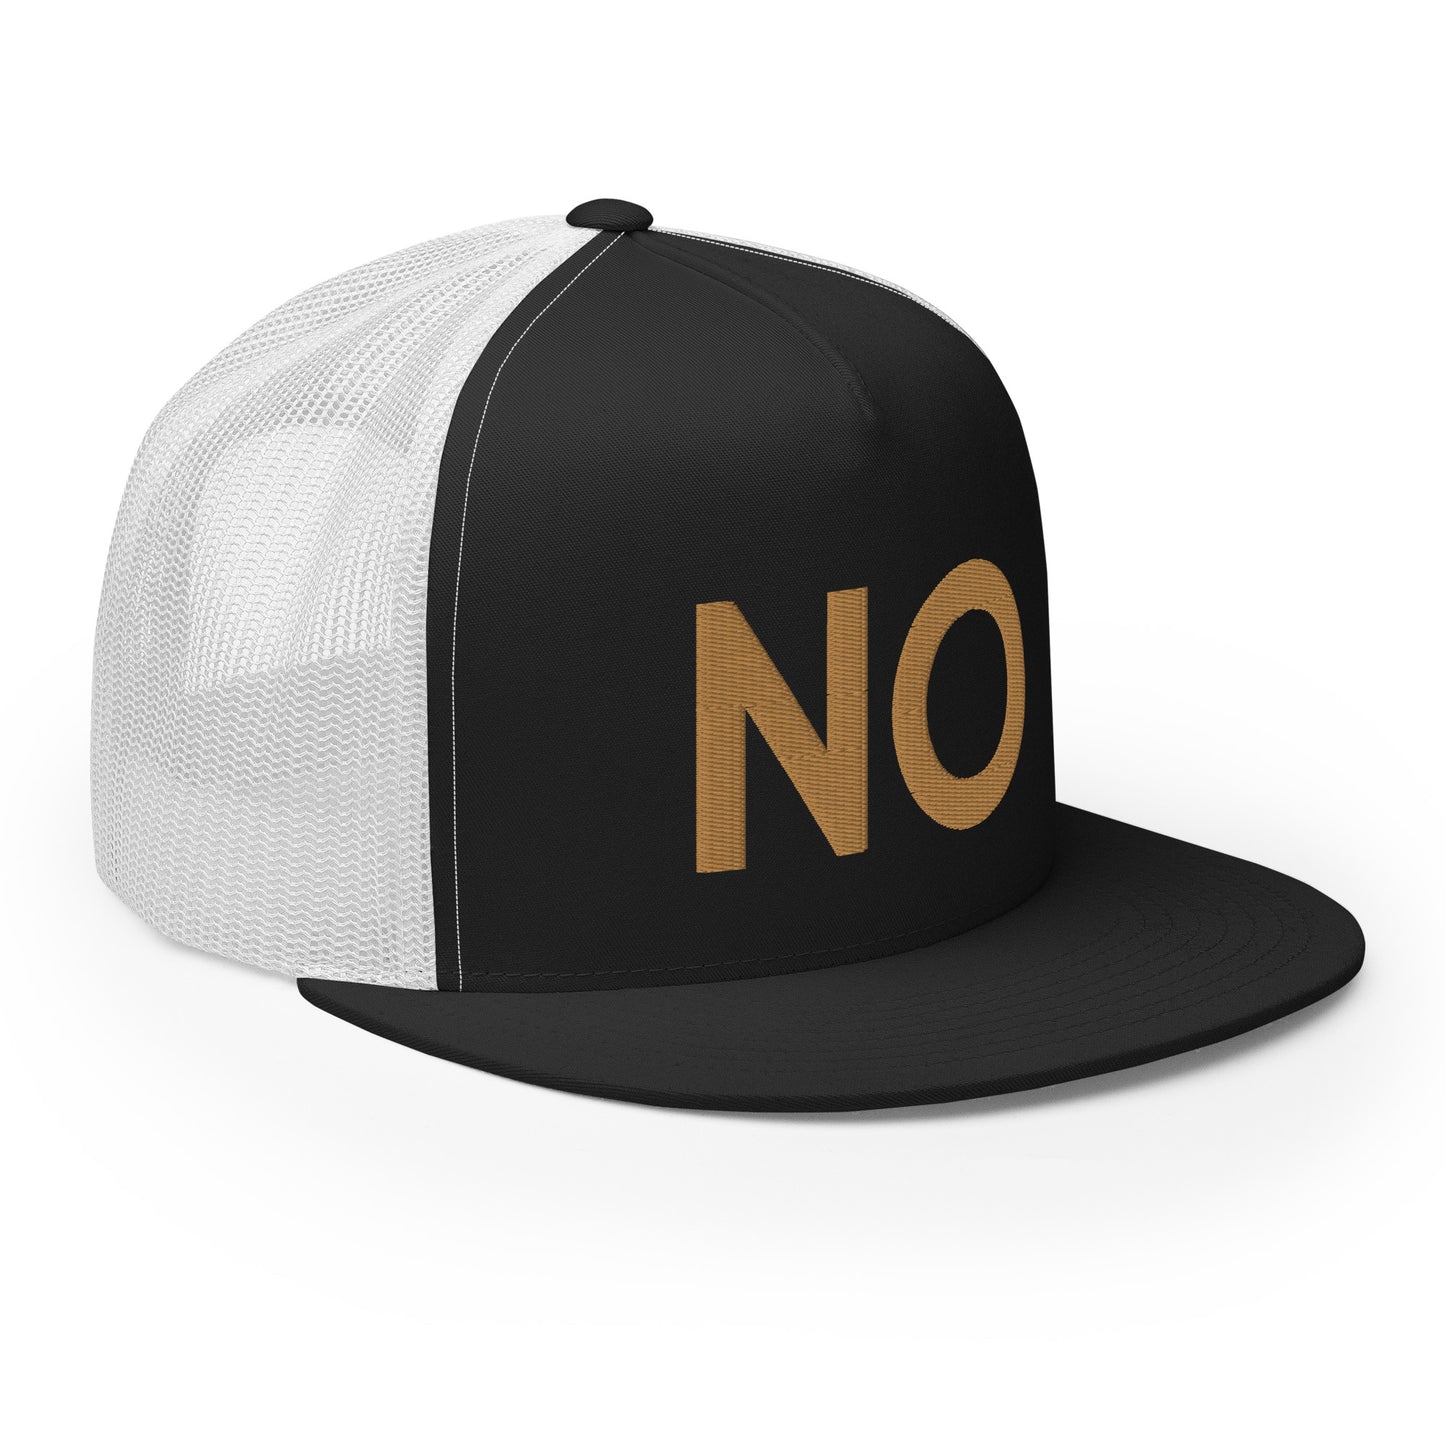 NO New Orleans Trucker Hat